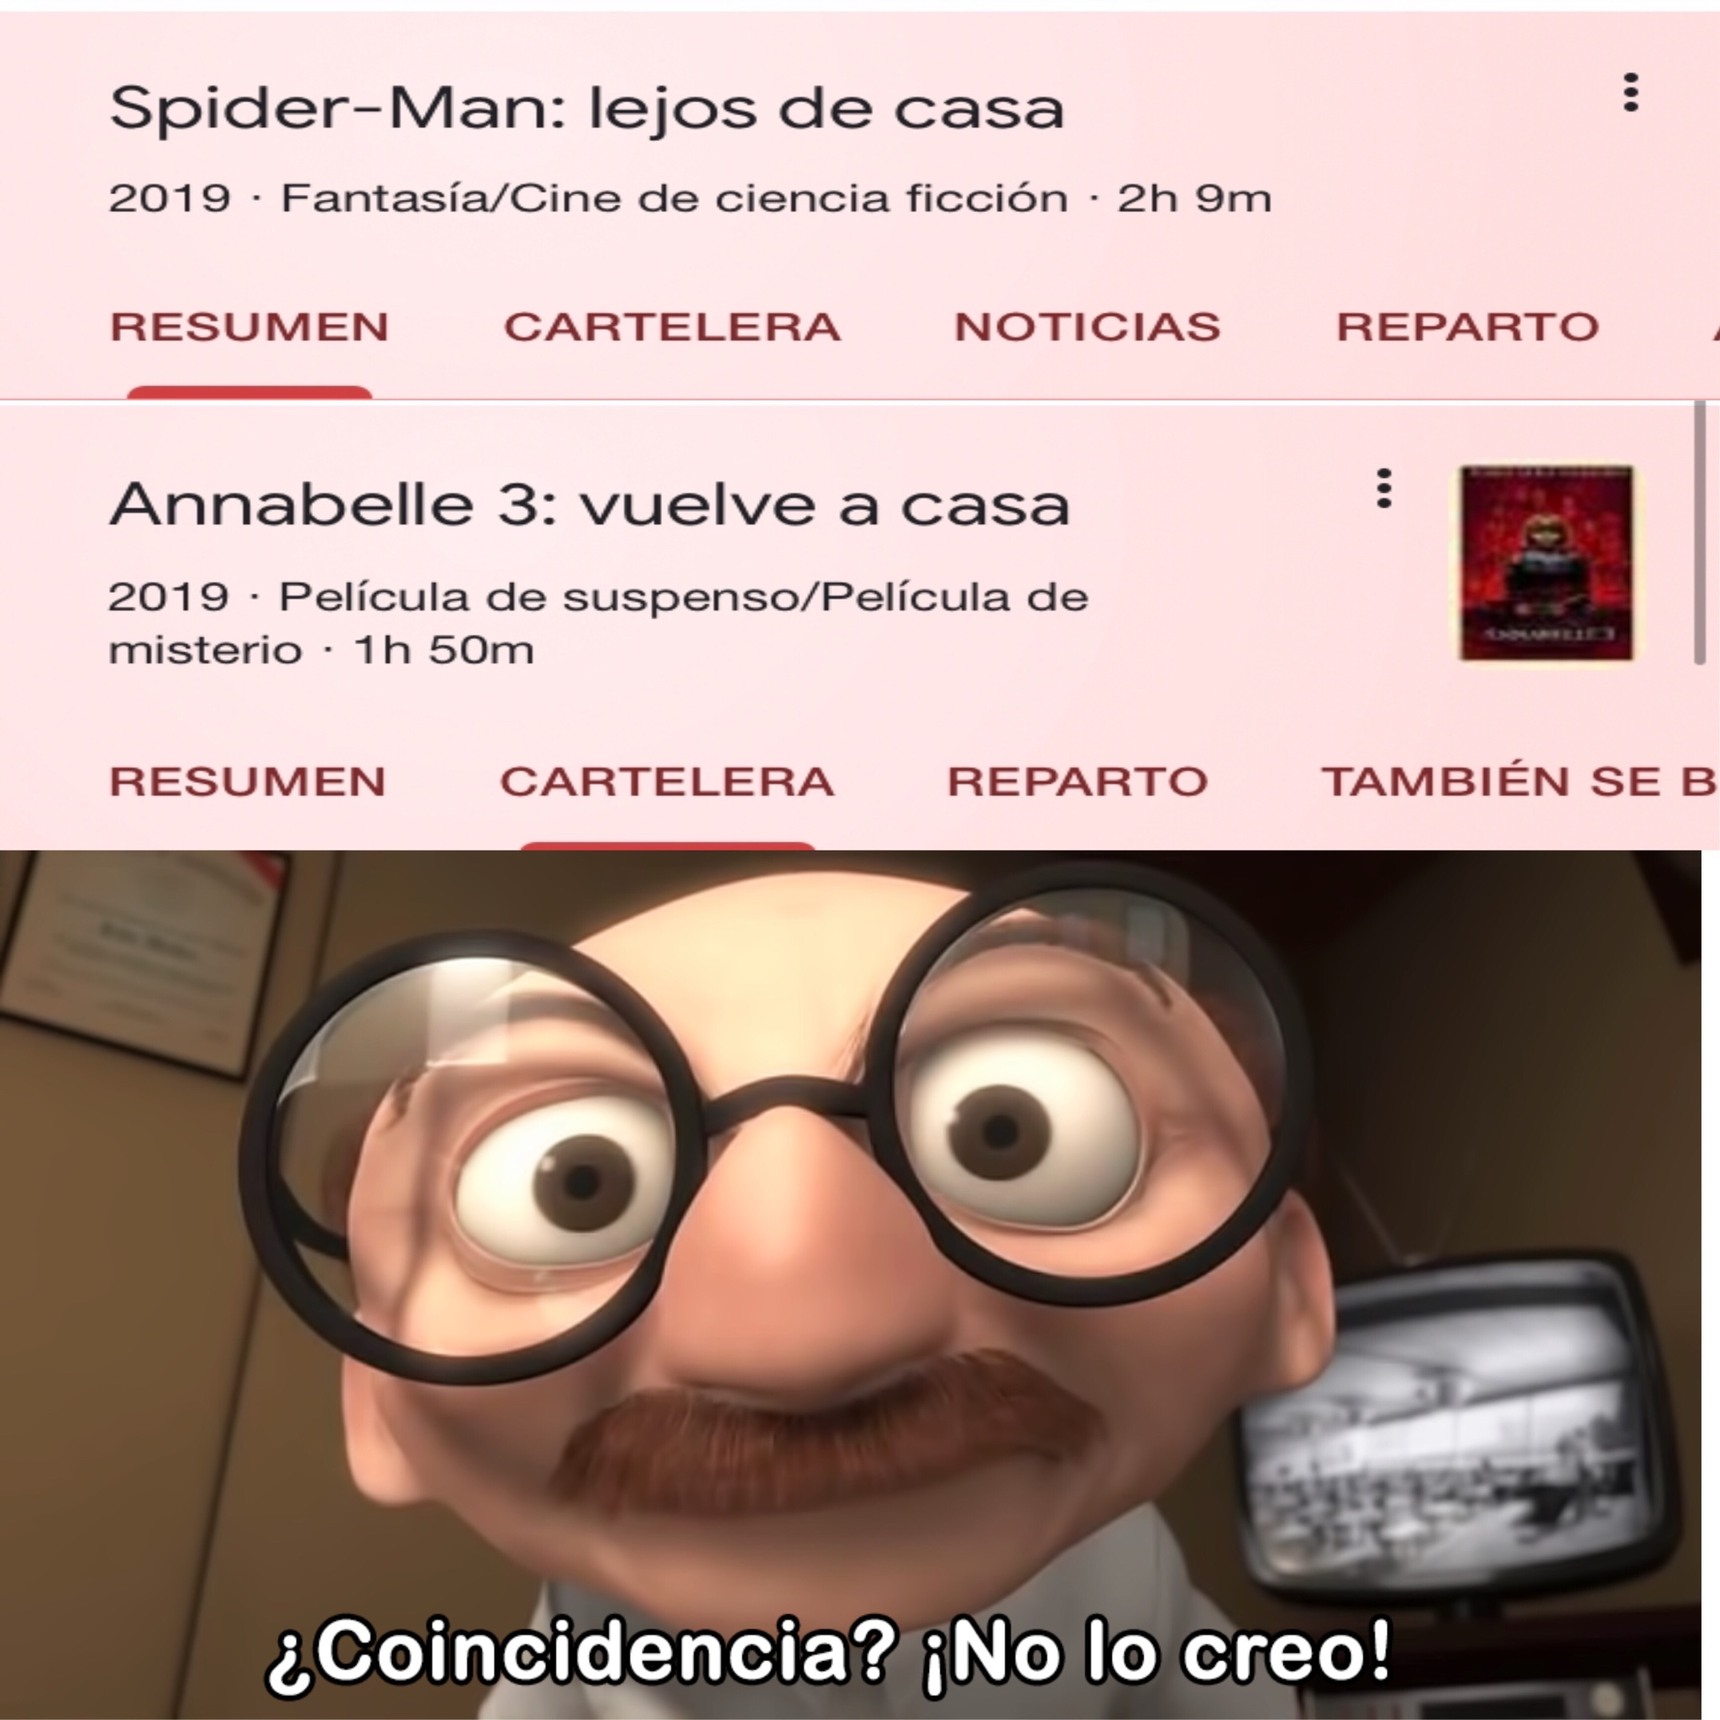 El Spiderman se mamo jaja - meme